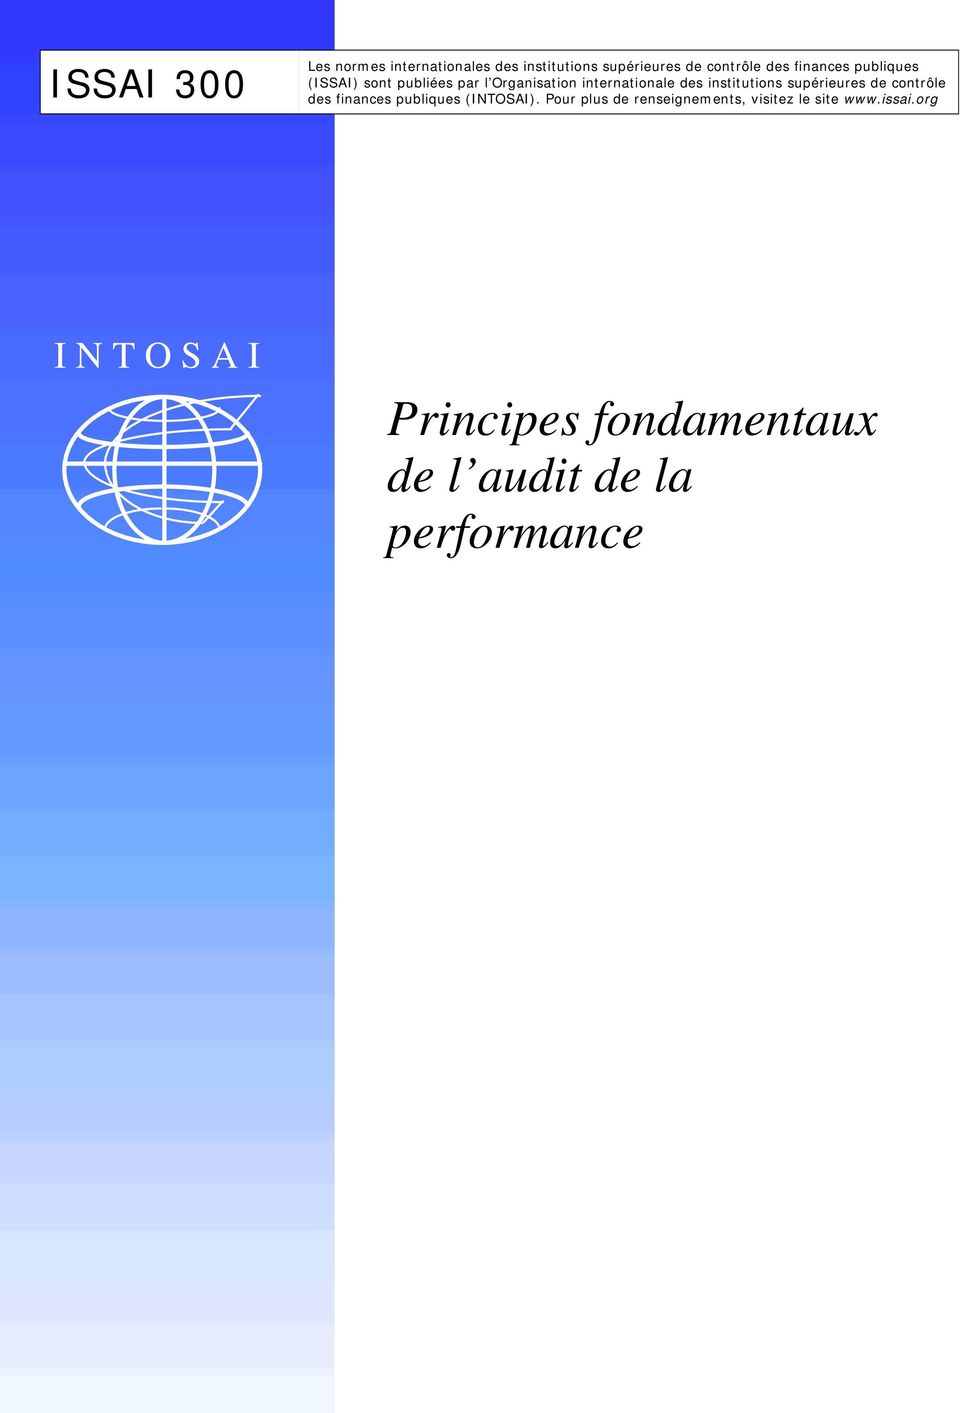 Organisation internationale des institutions supérieures de contrôle des finances publiques (INTOSAI).